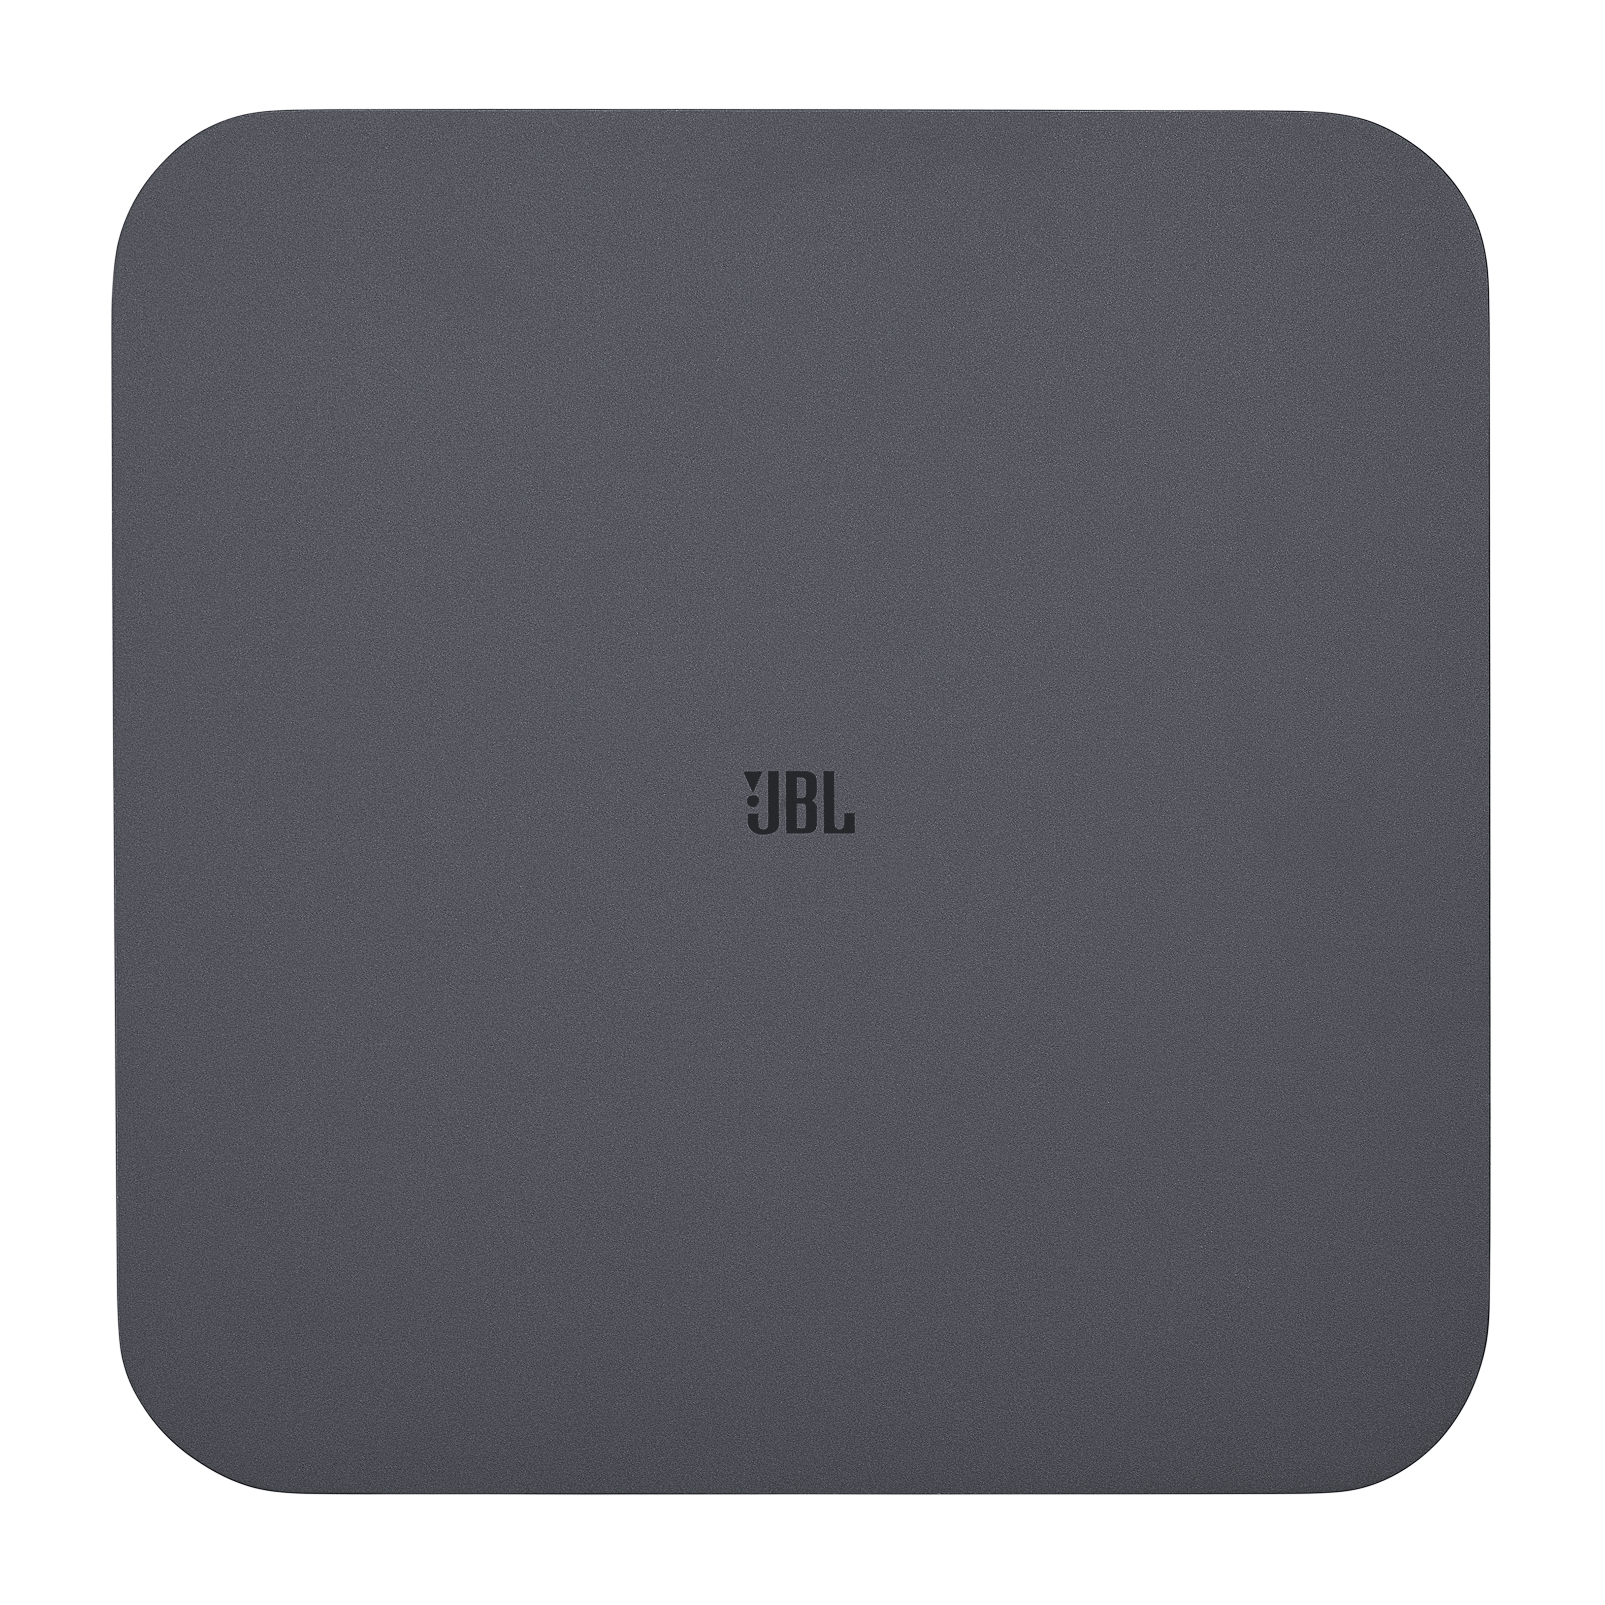 JBL BAR 500 5.1 kanałowy soundbar